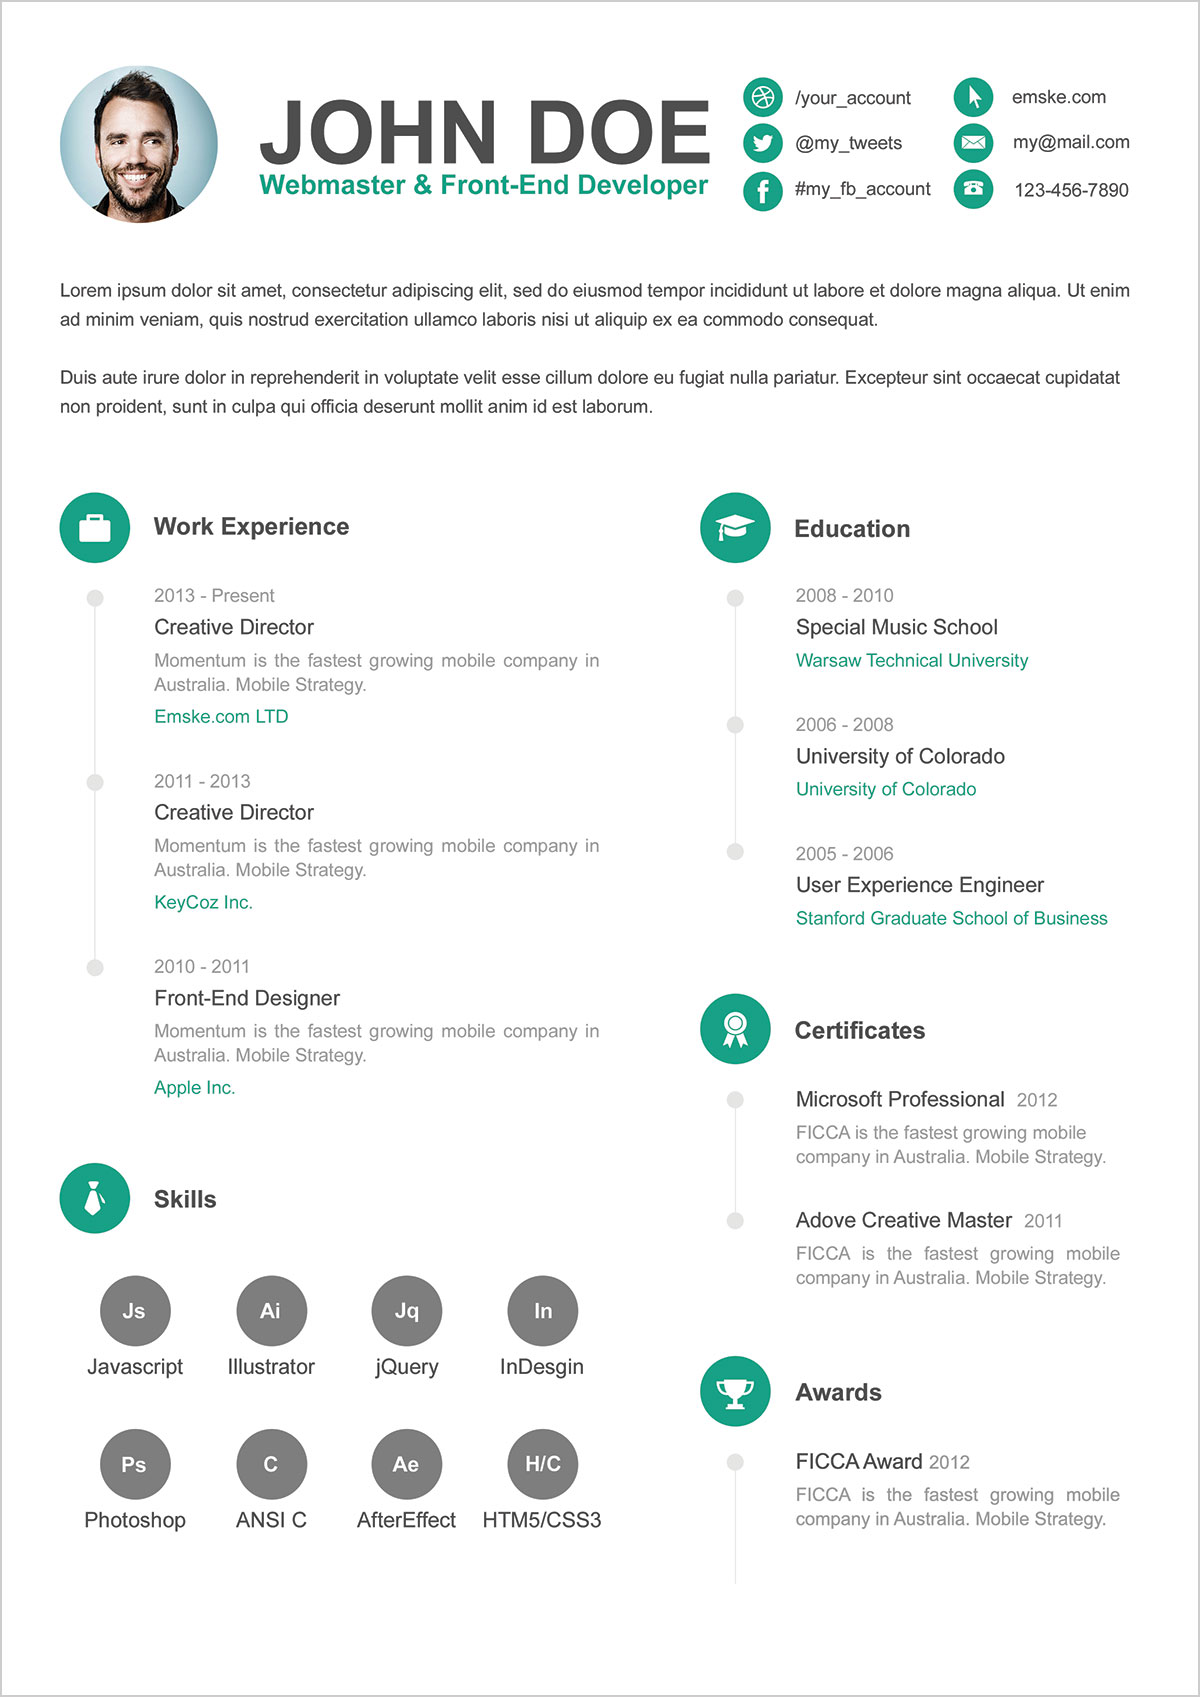 Free-PSD-Resume-CV-Template-for-Webmaster-&-Front-End-Developer